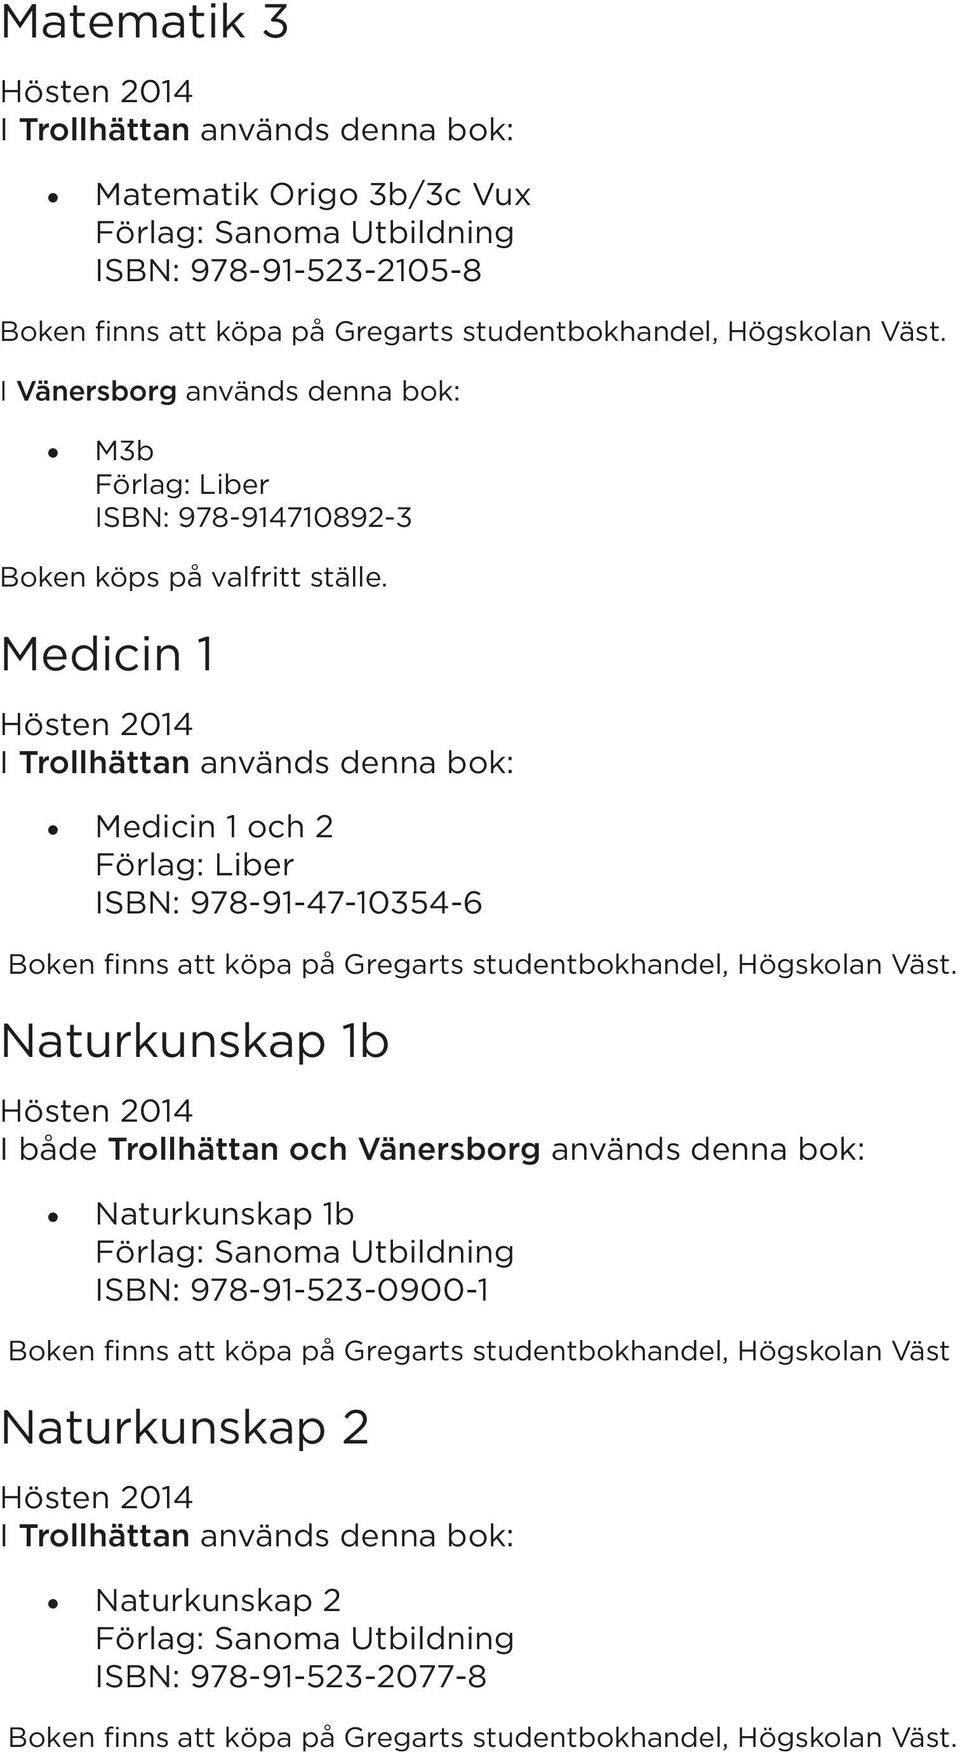 1b Naturkunskap 1b ISBN: 978-91-523-0900-1 Boken finns att köpa på Gregarts